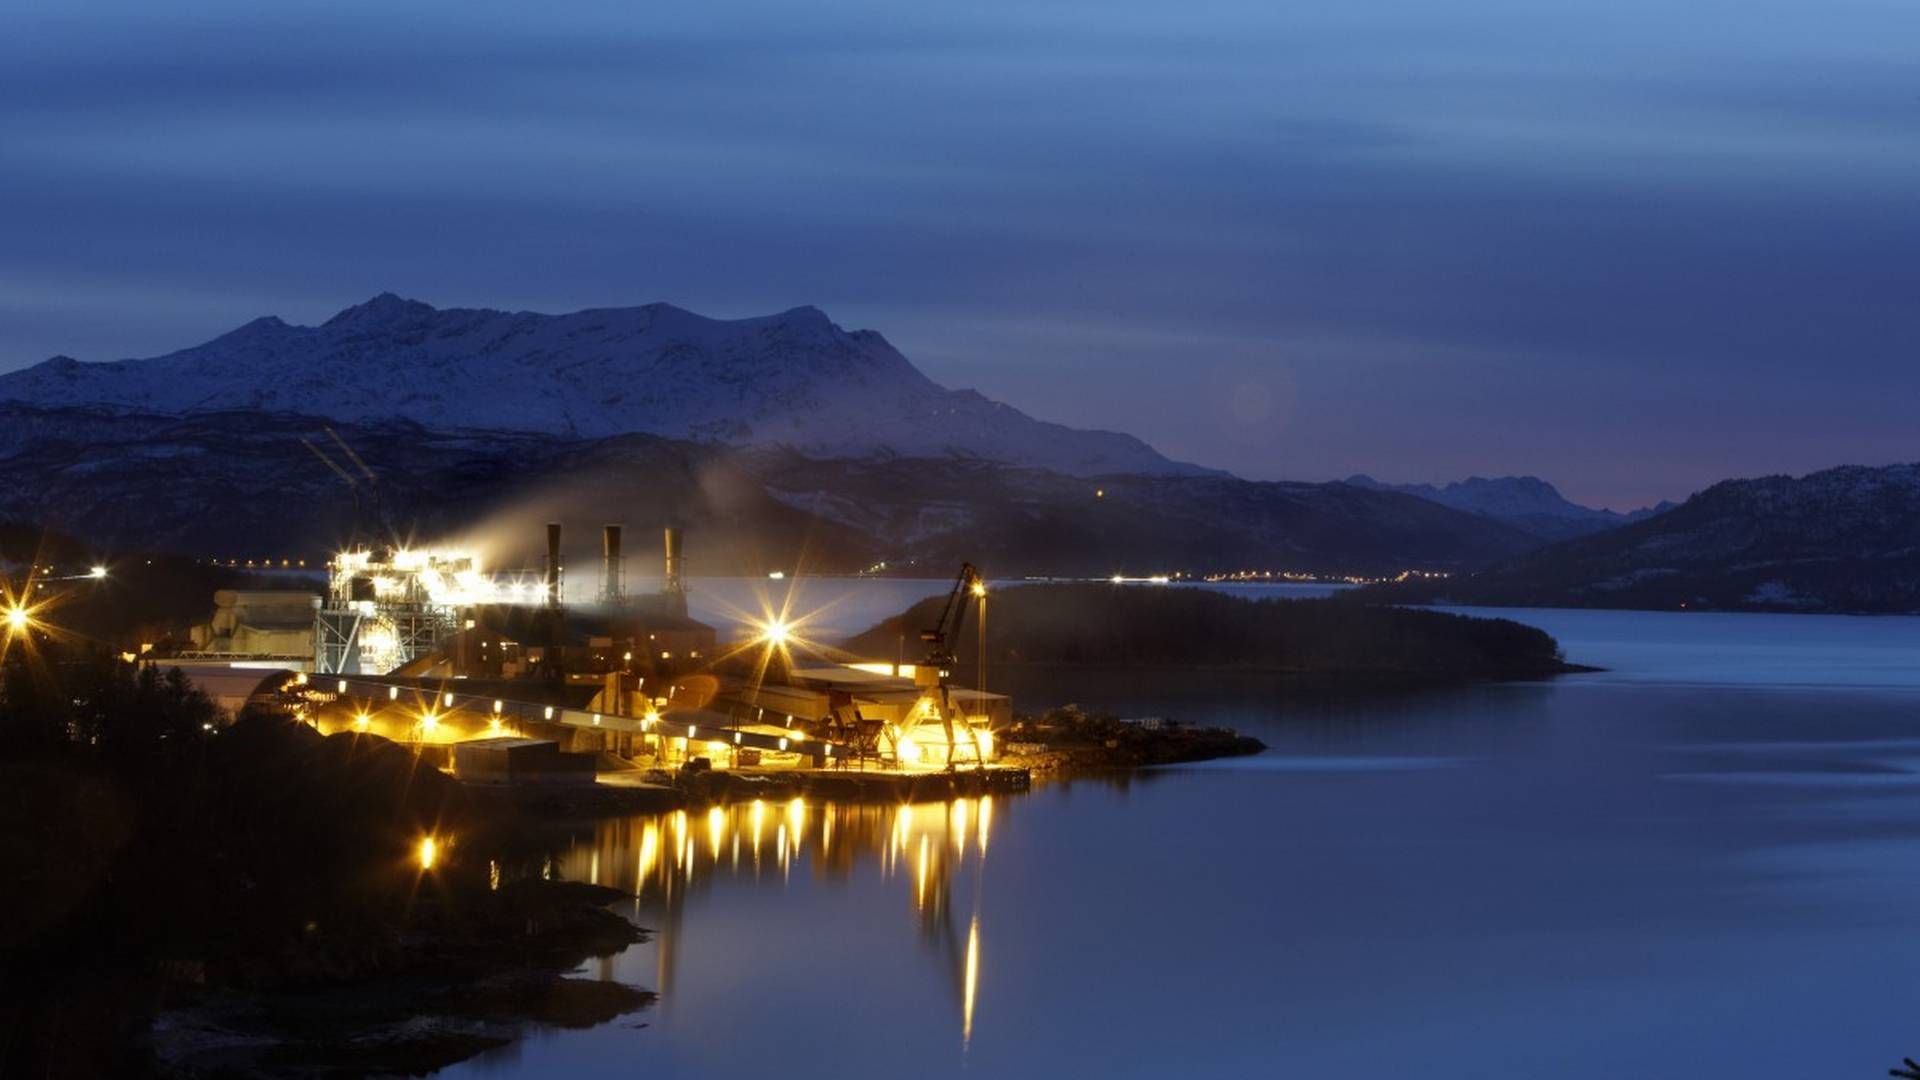 FÅR KAPASITET: Finnfoss er en av strømvinnere, og får 60 MW reservert nettkapasitet til algeproduksjon av alger som spiser CO2. | Foto: Finnfjord AS